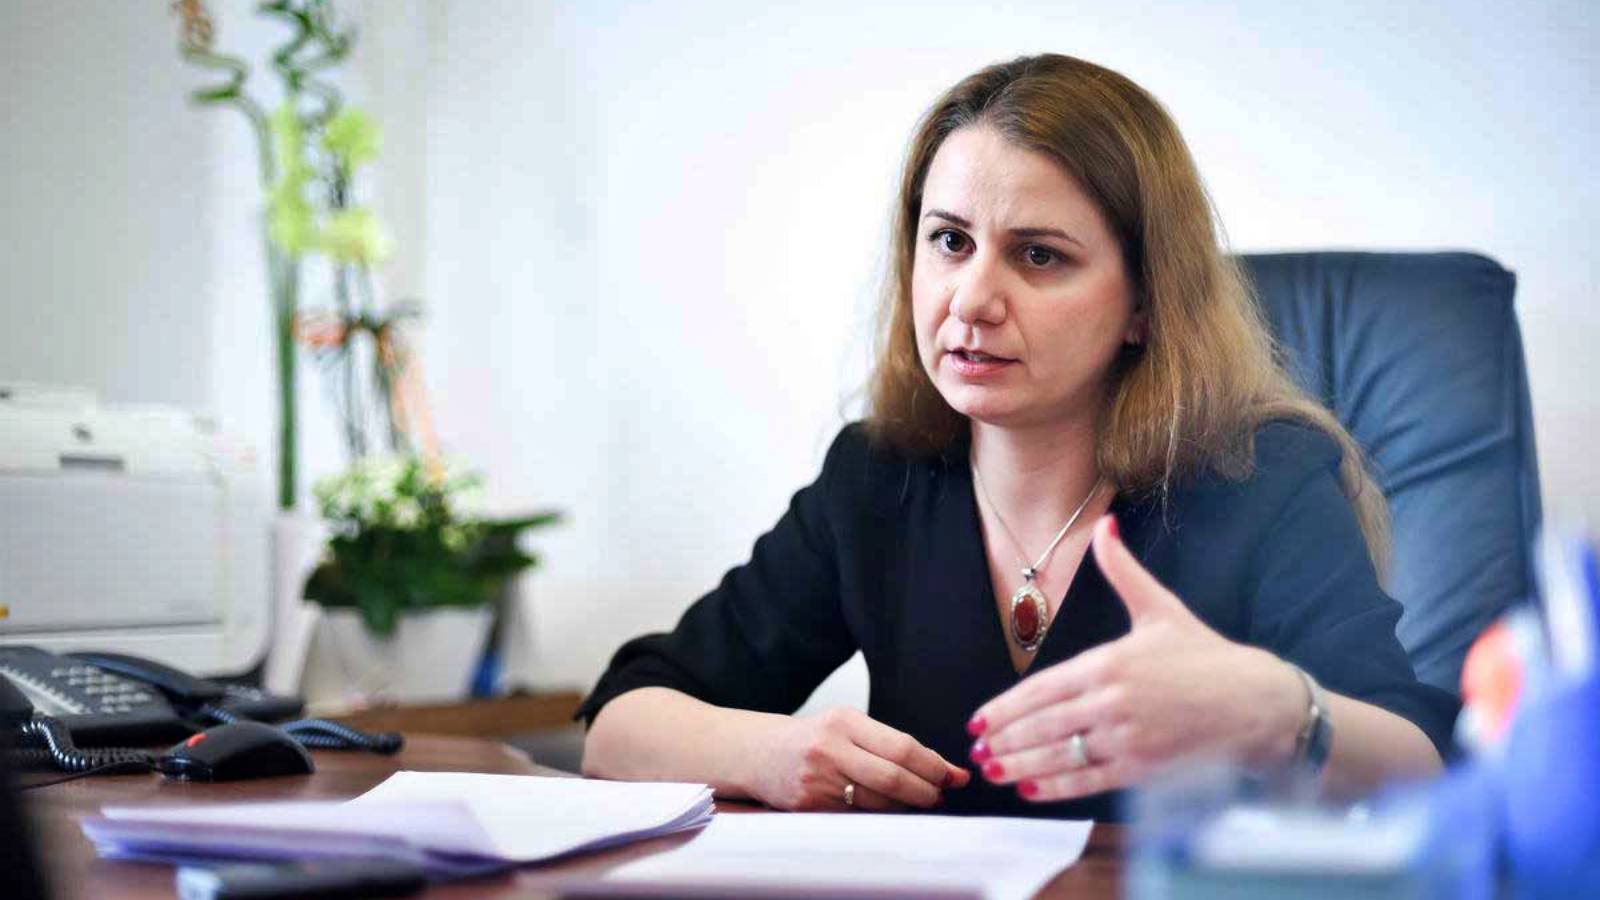 De minister van Onderwijs kondigt een BELANGRIJK besluit aan over de toekomst van Roemeense scholieren